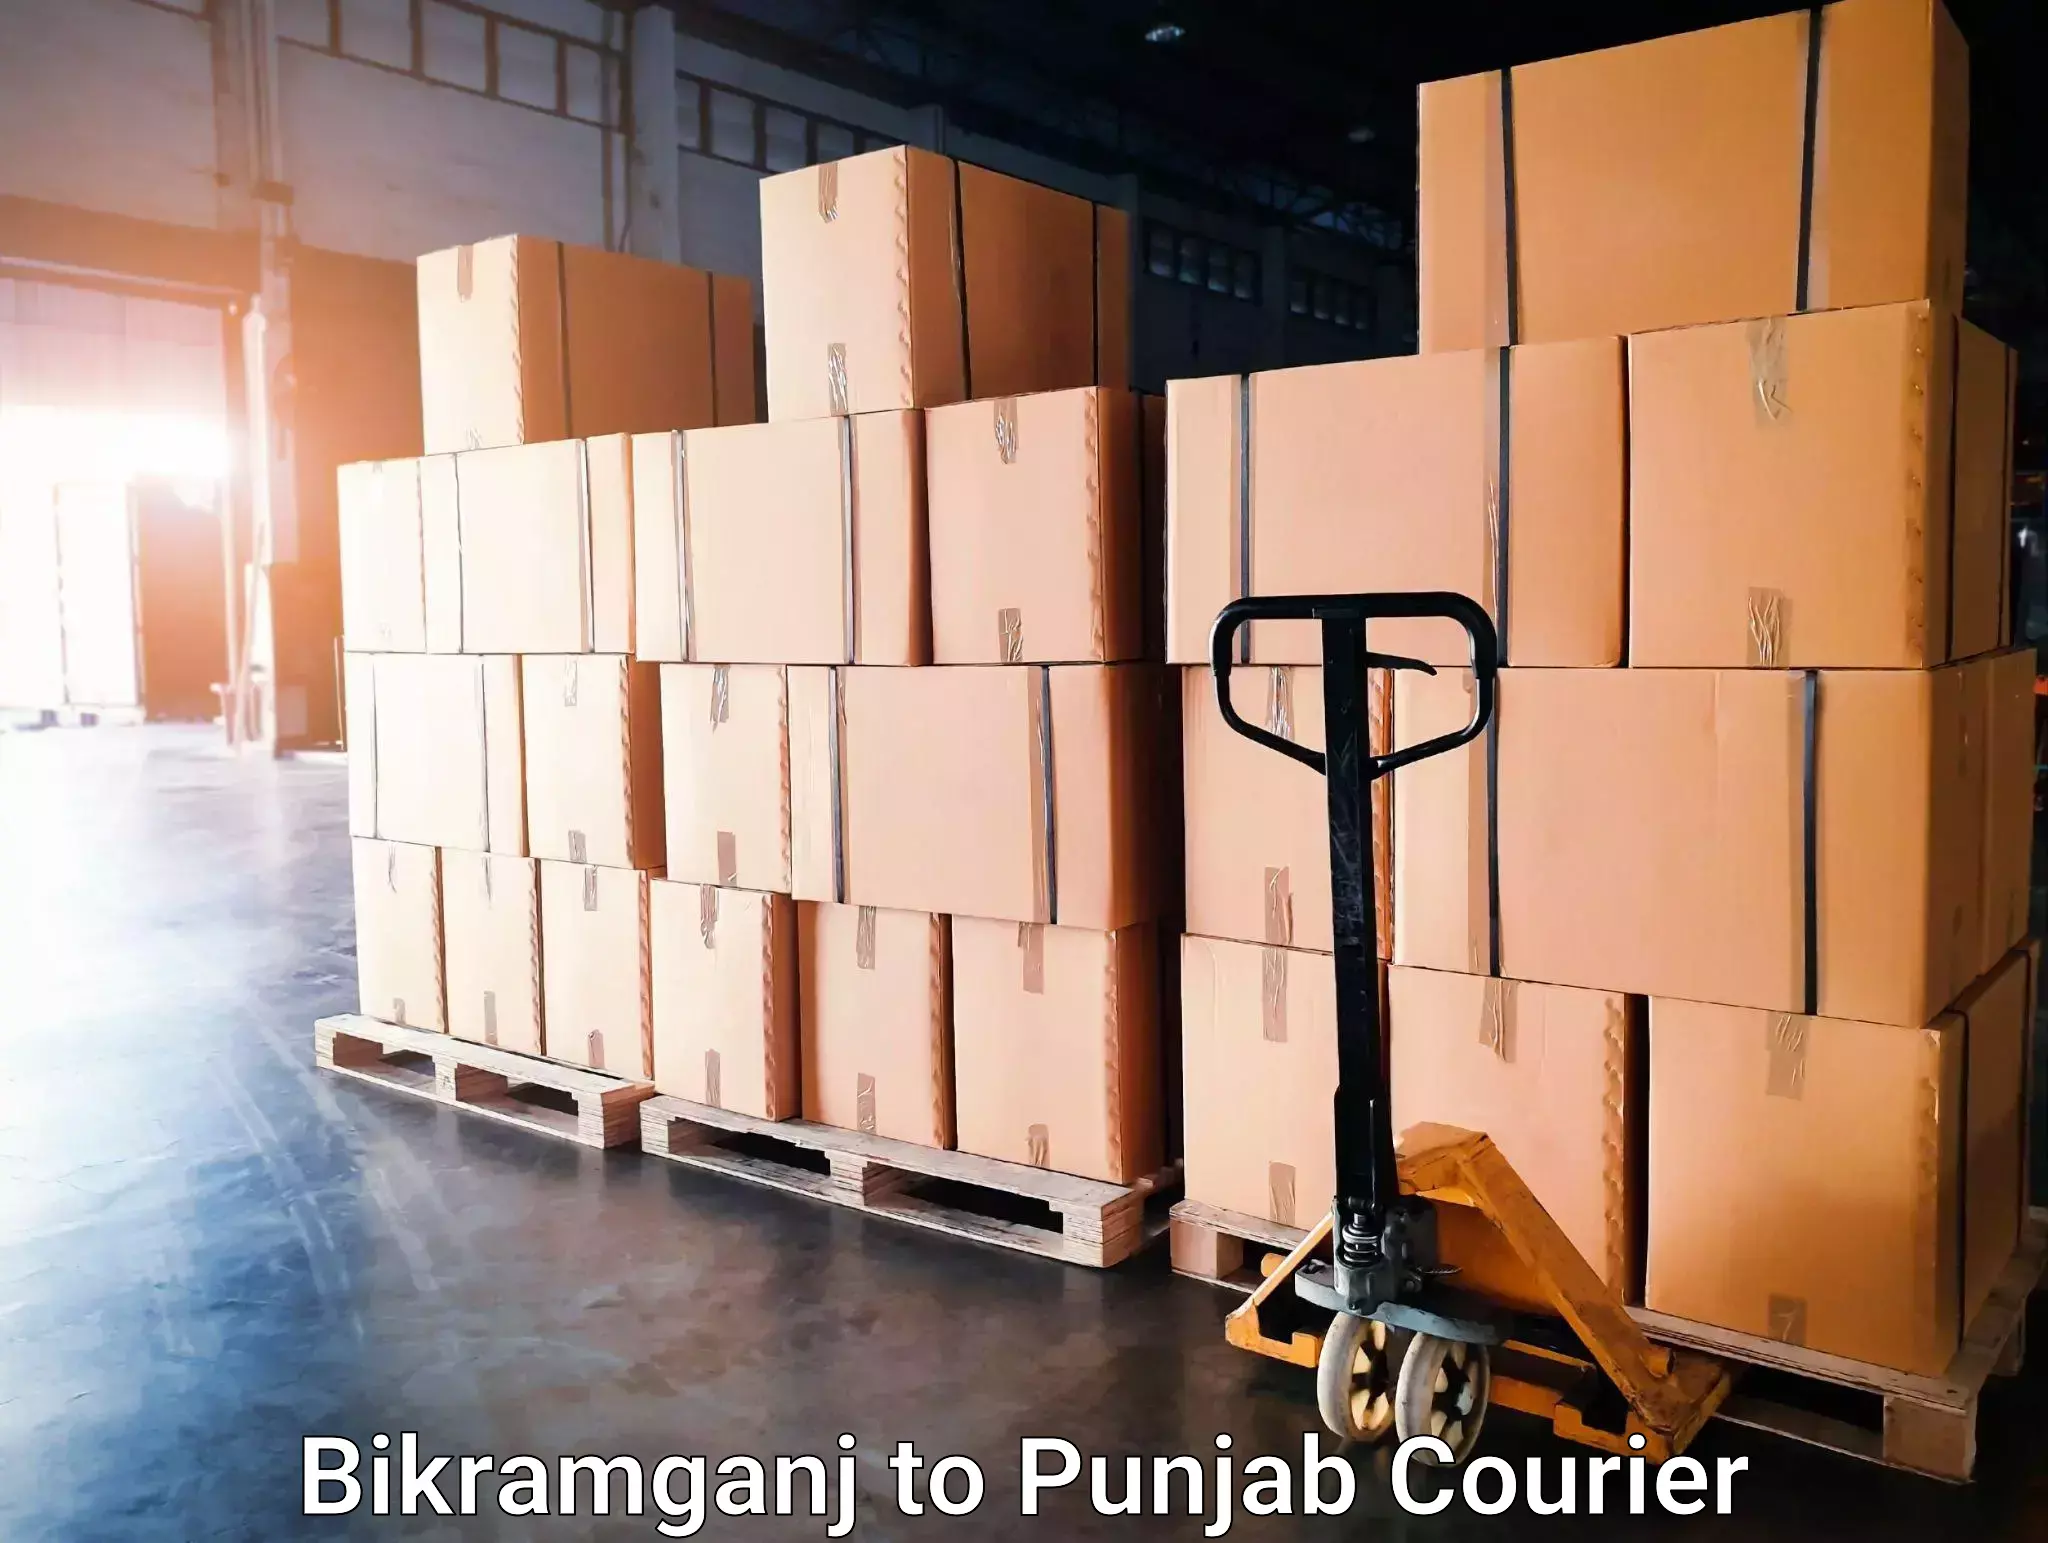 Efficient relocation services Bikramganj to Punjab